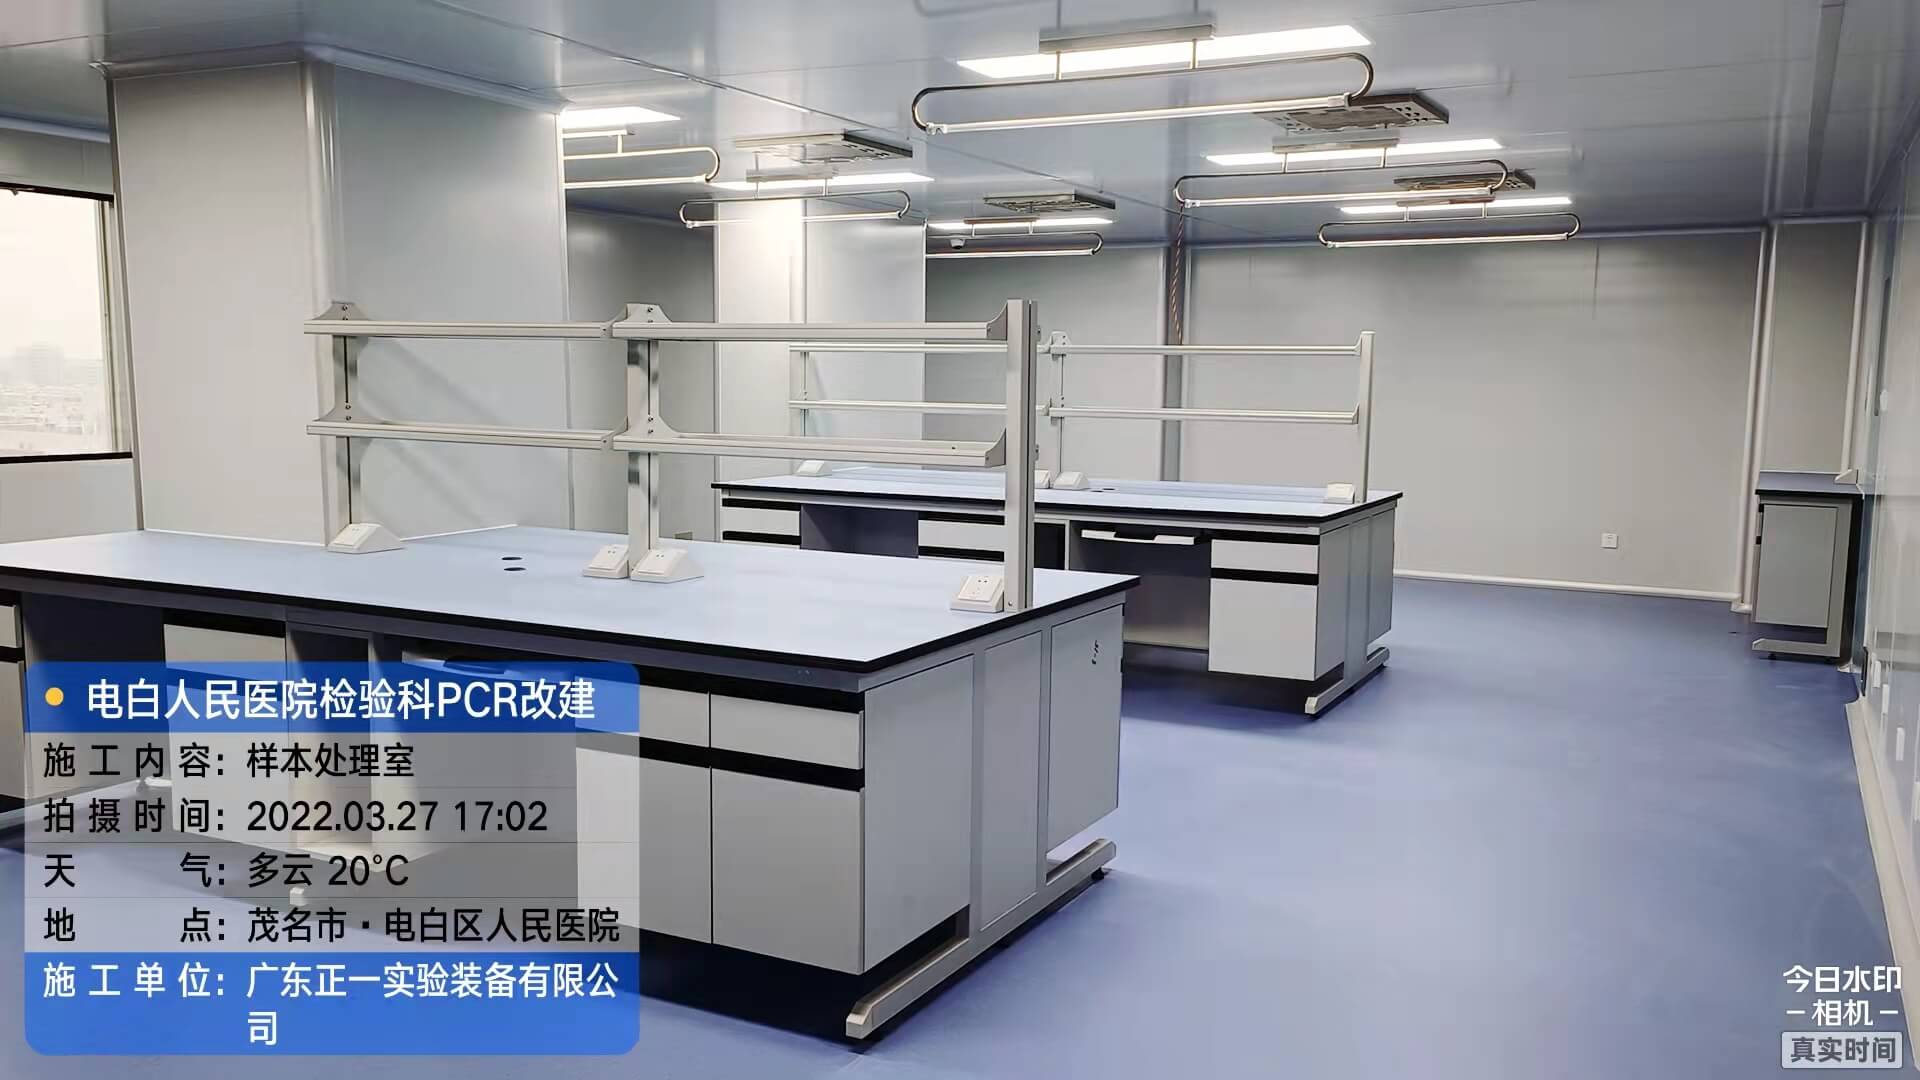 茂名市电白区人民医院外科综合楼12、13层改建检验科及PCR实验室工程 (2)